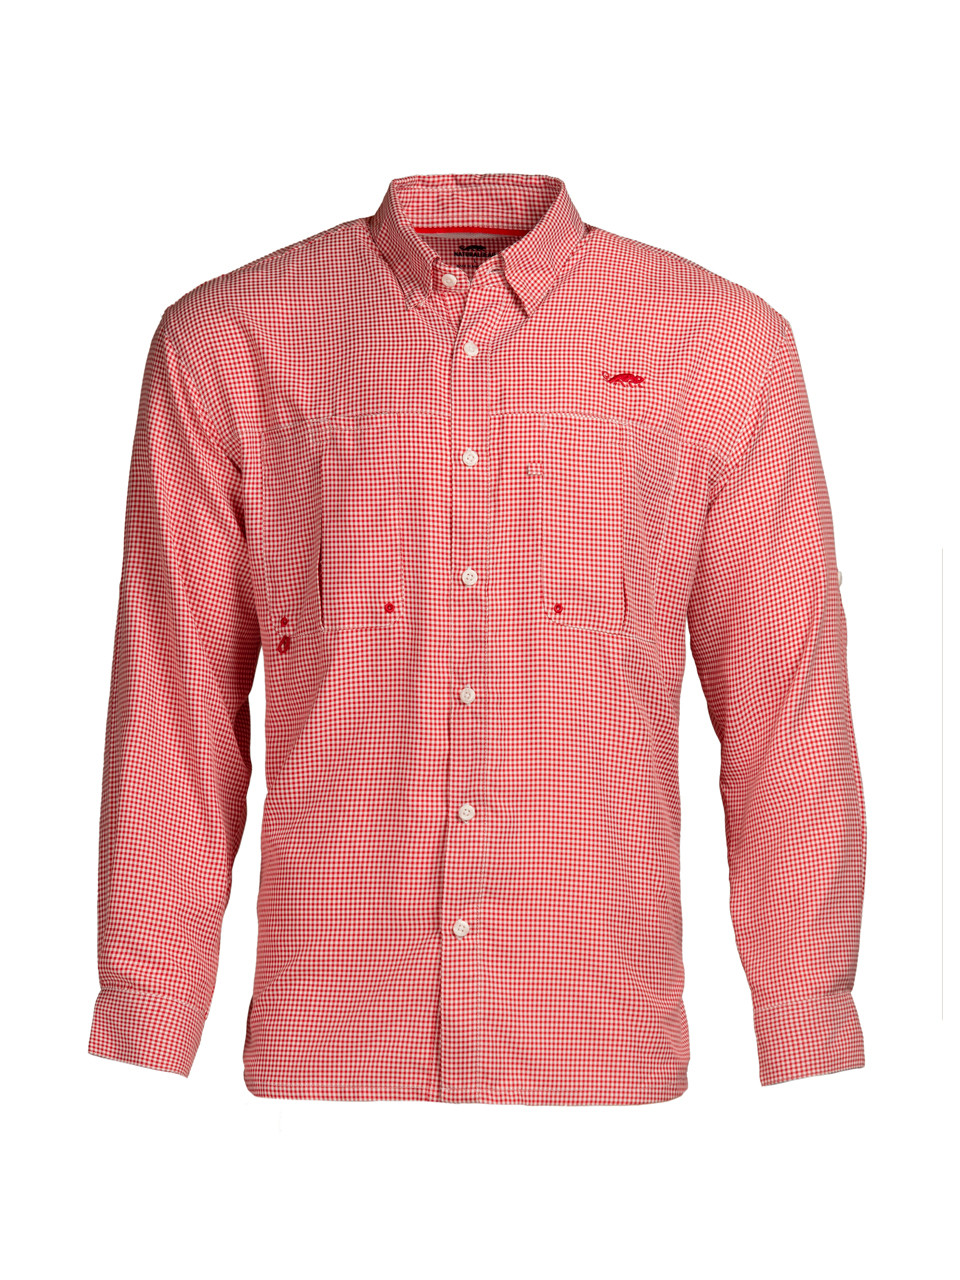 Intracoastal Long Sleeved Fishing Shirt - Red Check - Natural Gear